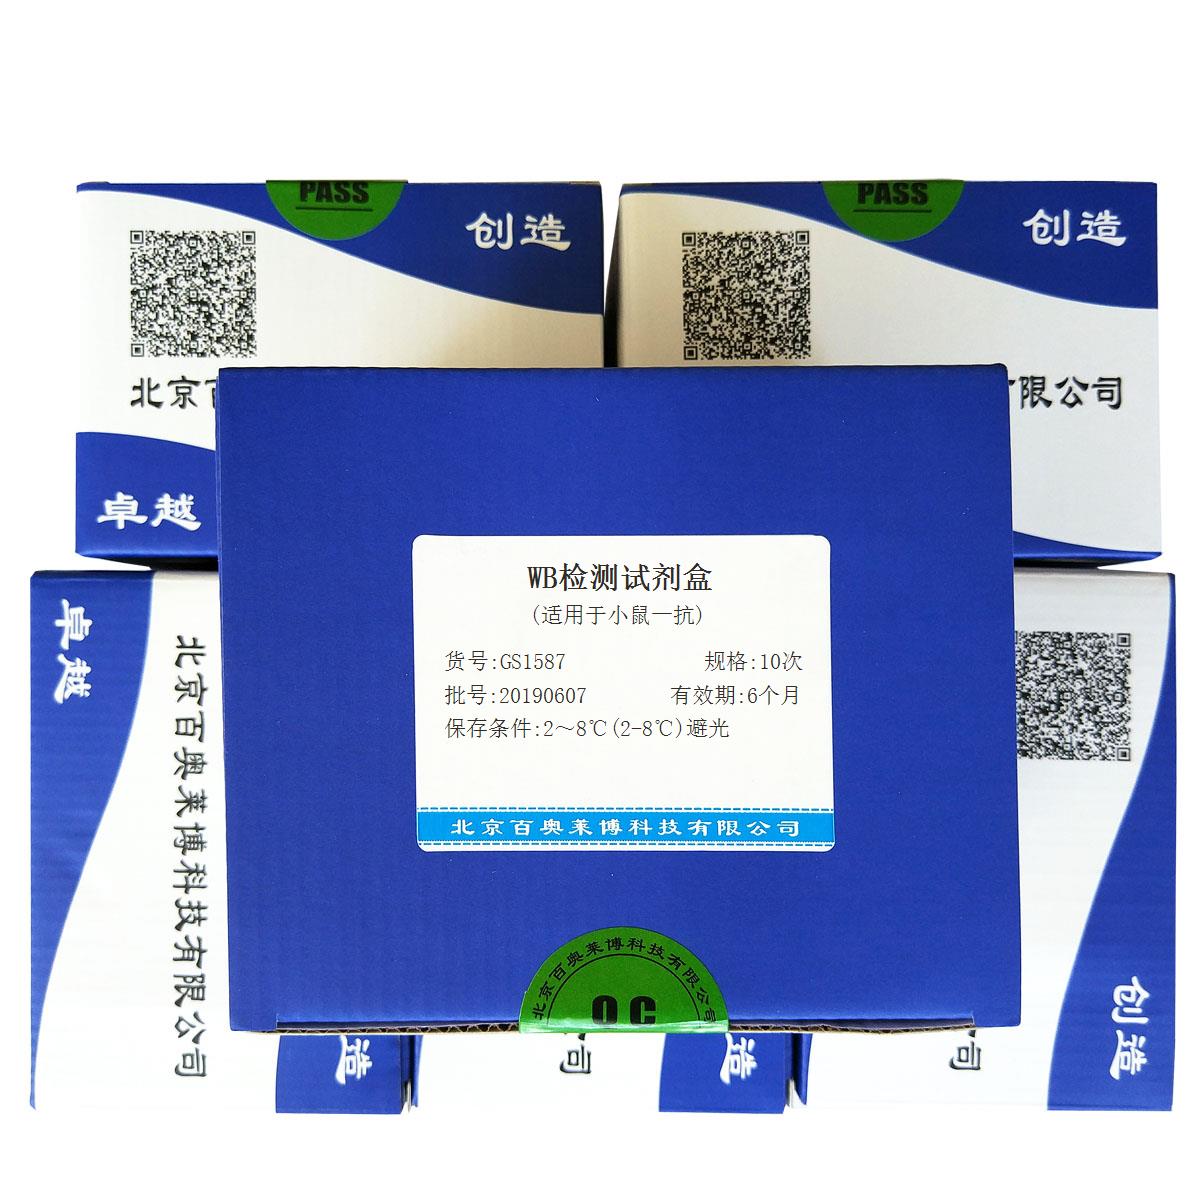 WB检测试剂盒(适用于小鼠一抗)北京厂家